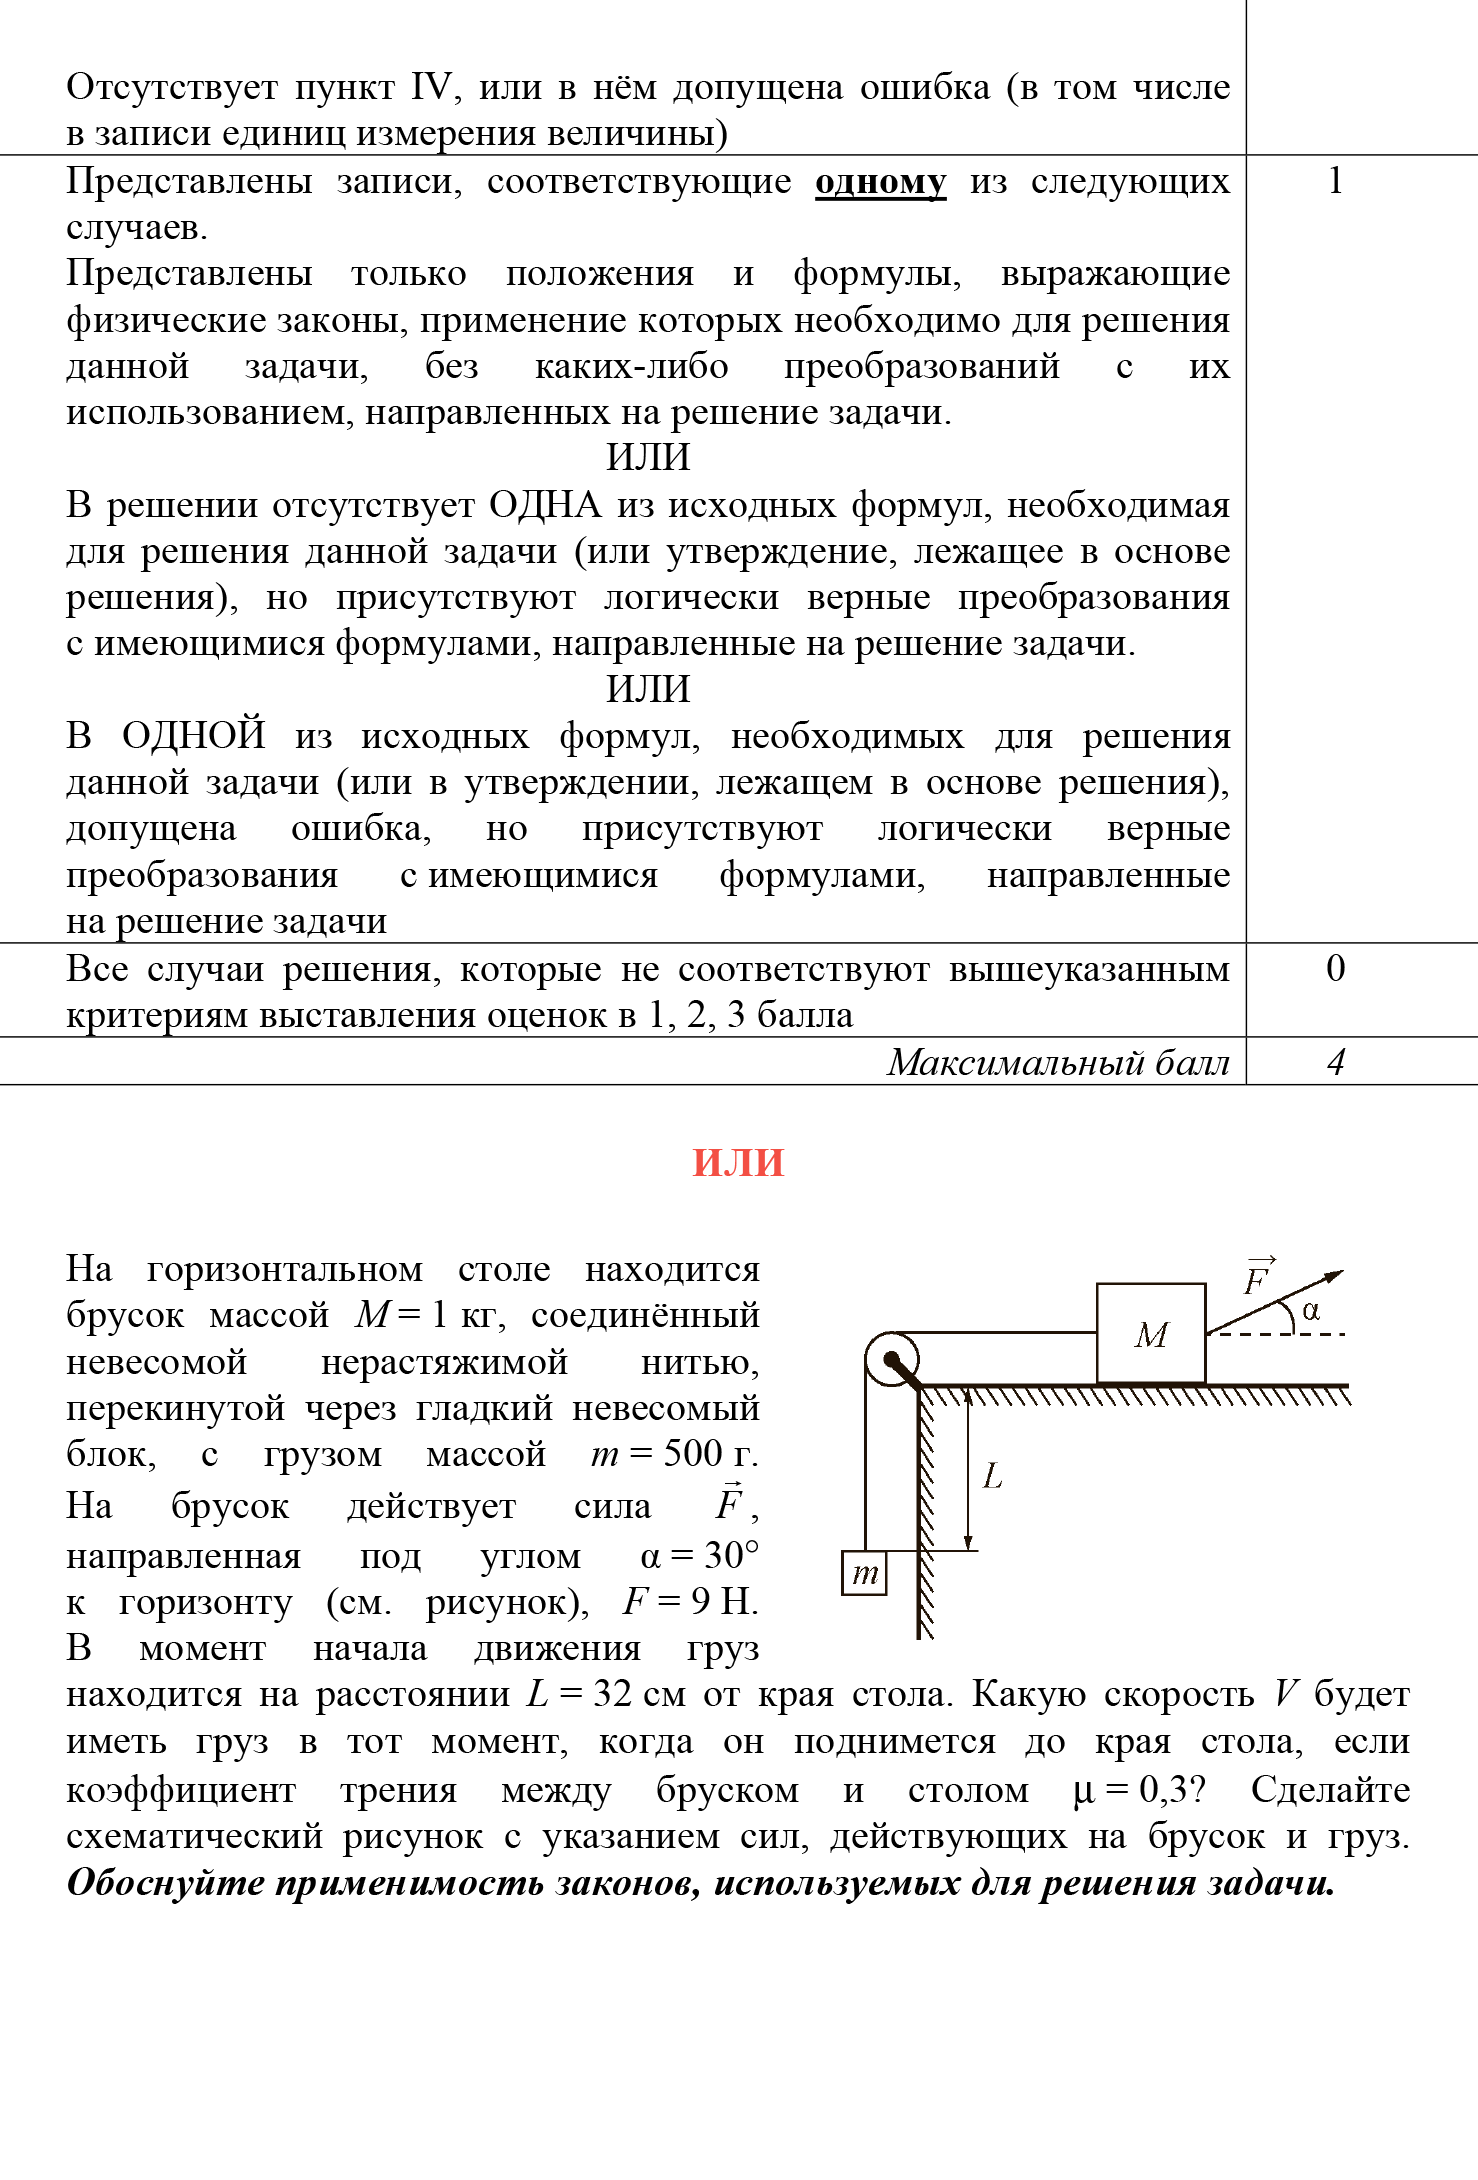 Критерии оценивания задачи 26 и ее демонстрационный вариант. Источник: fipi.ru